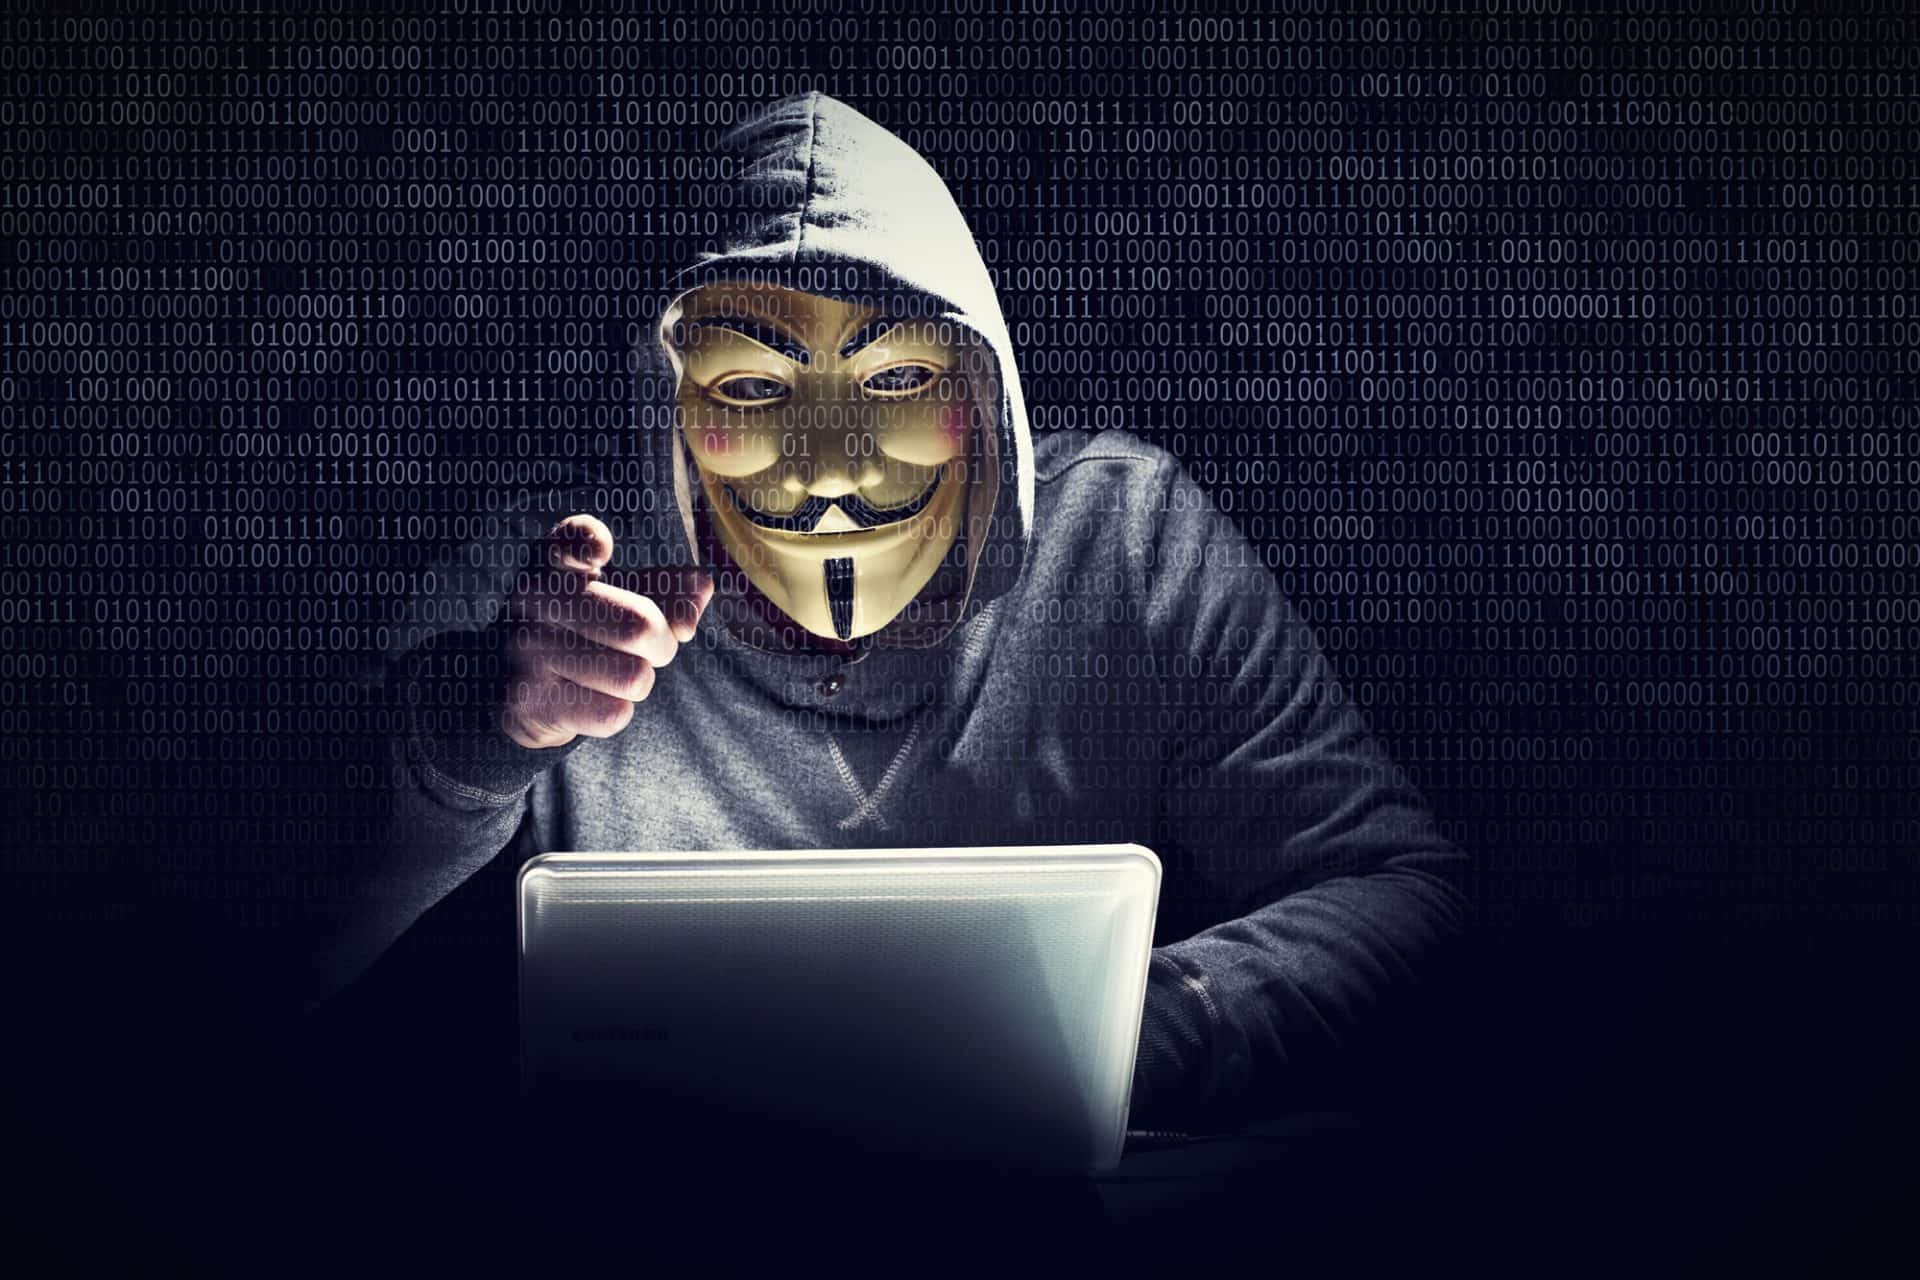 Hacker in a Mask